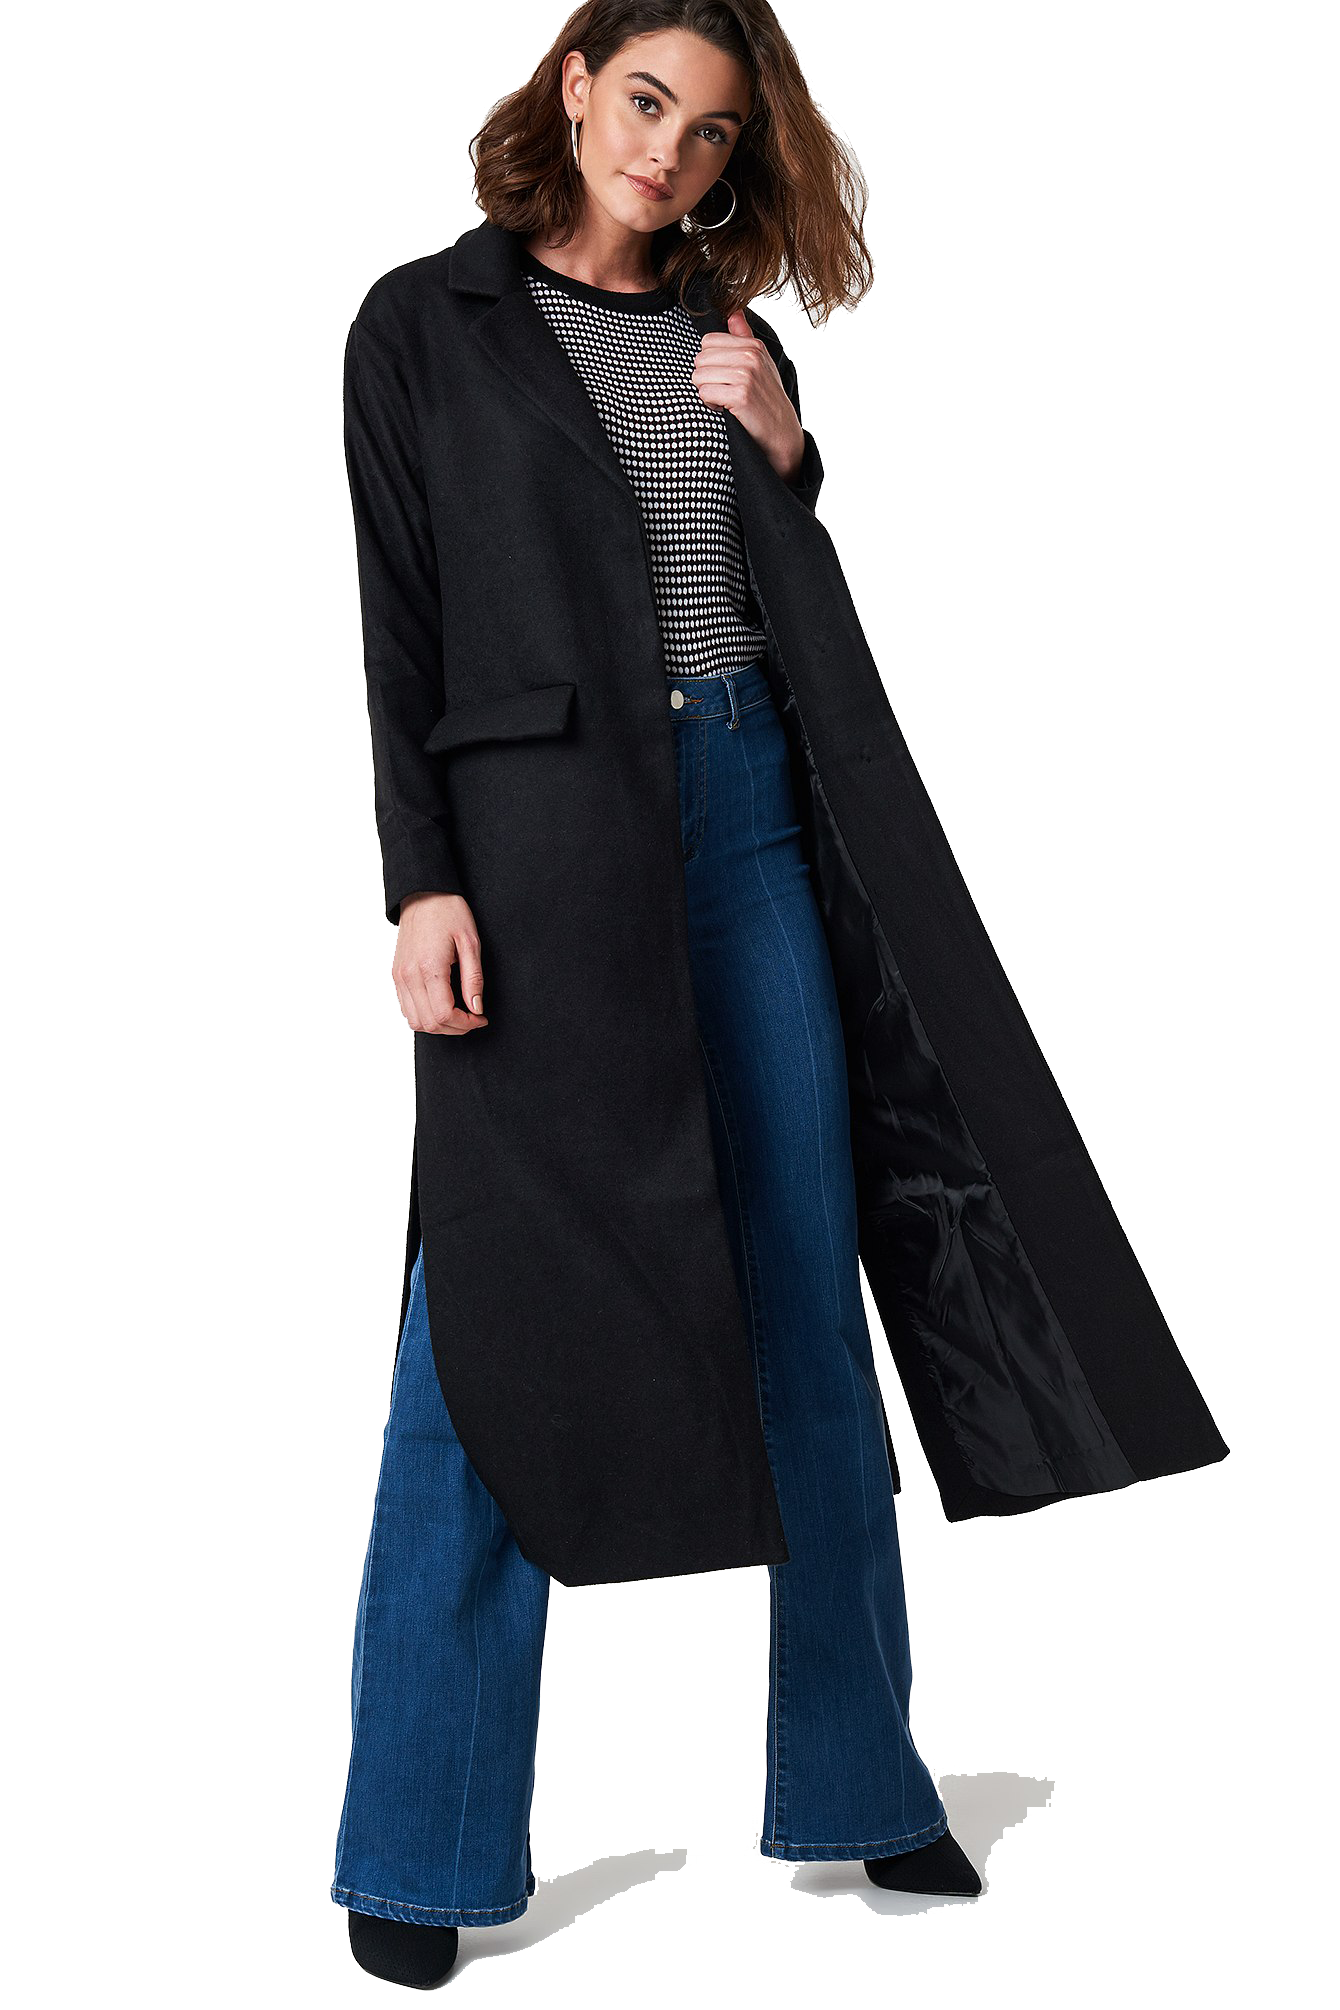 Mulheres longas casaco transparente imagem